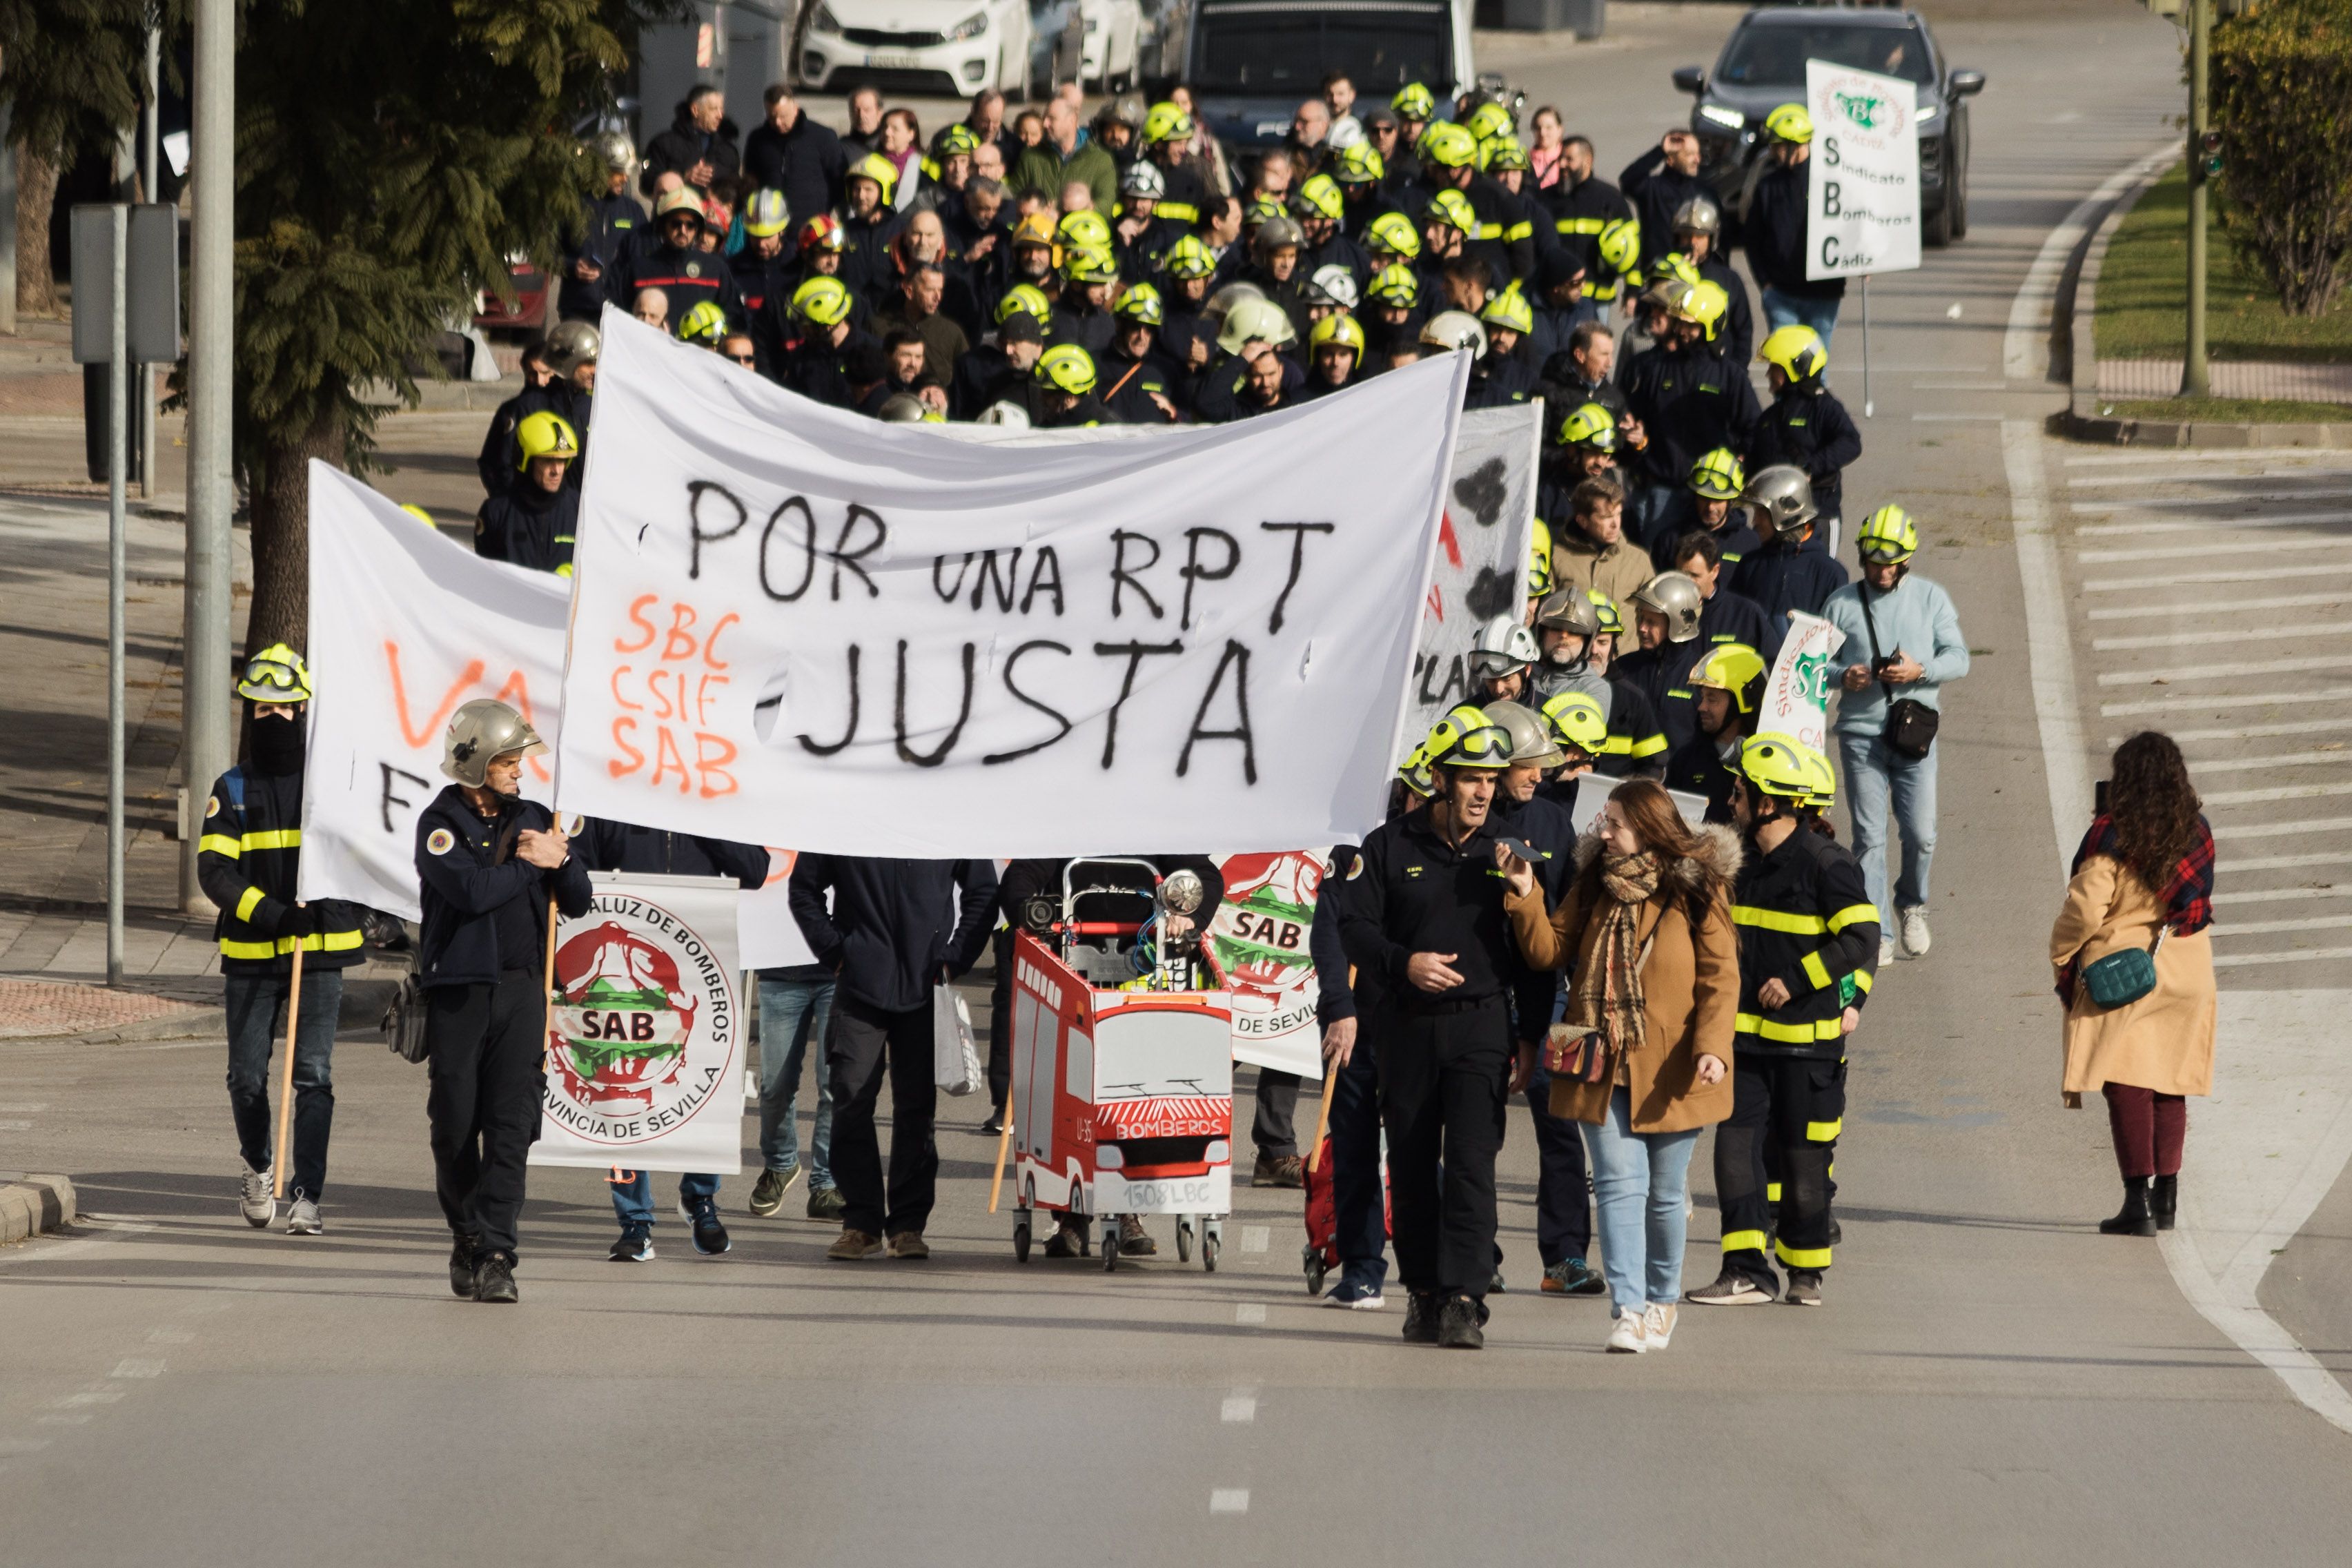 Manifestación del cuerpo de bomberos de Cádiz, este viernes en Jerez, por una RPT justa.